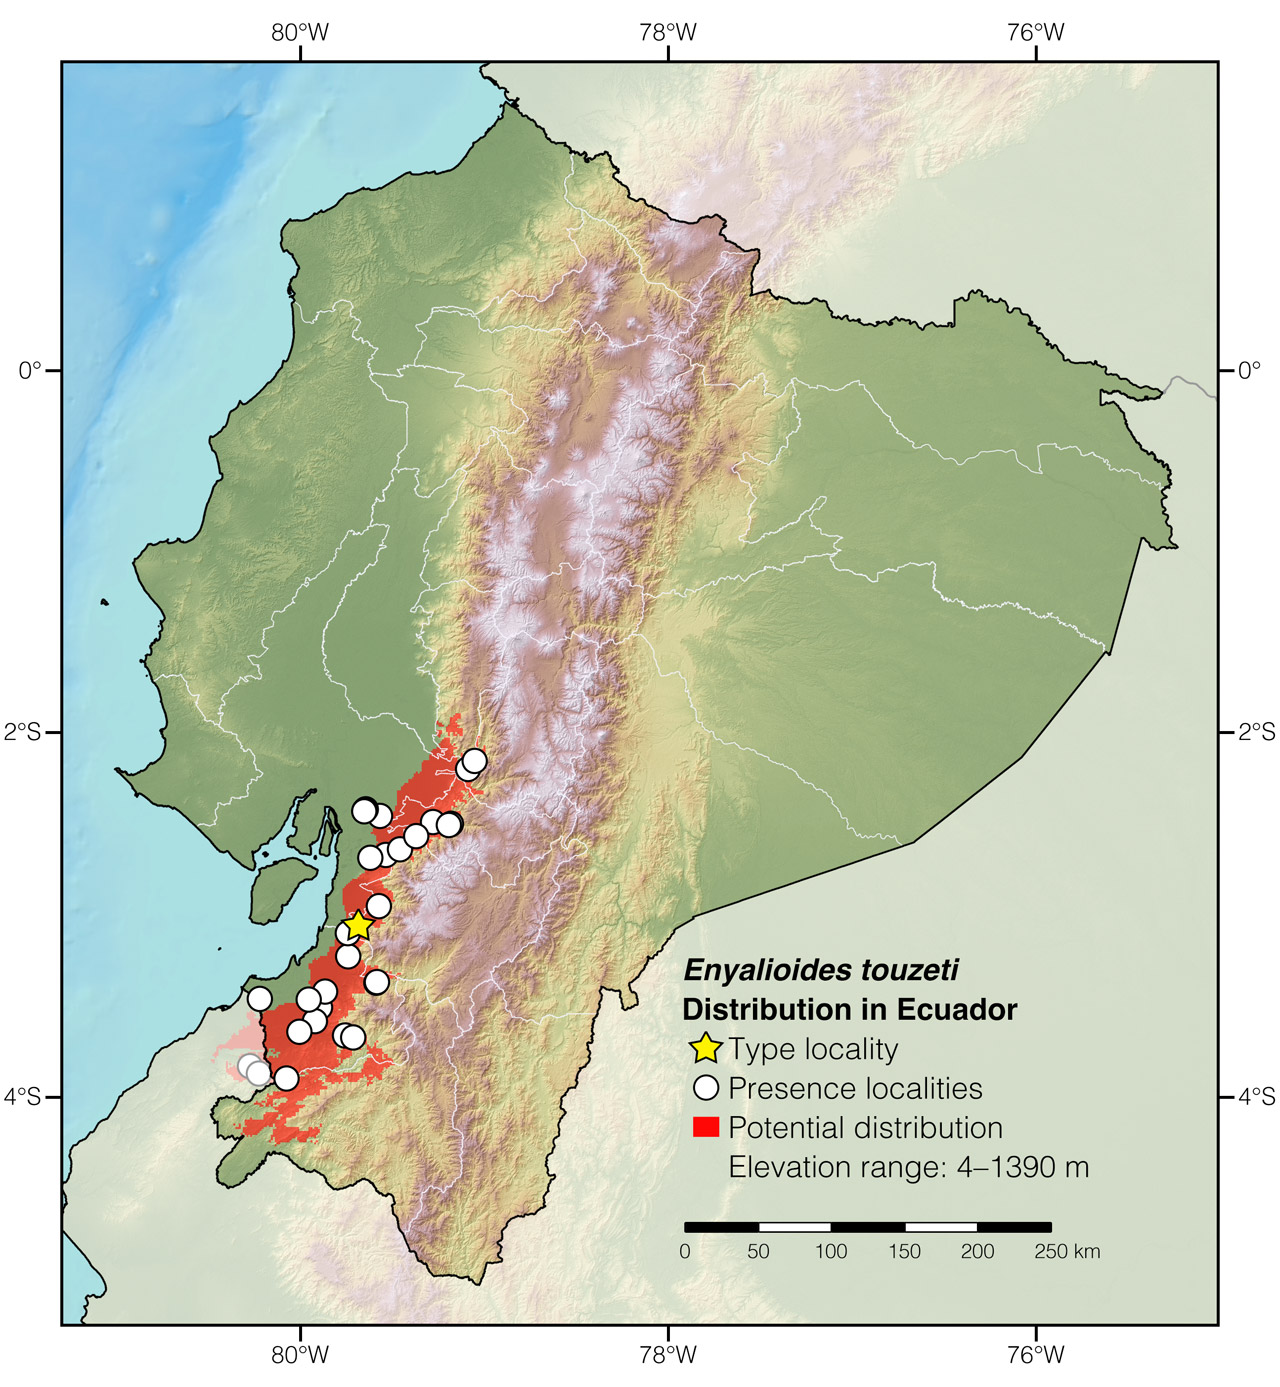 Distribution of Enyalioides touzeti in Ecuador